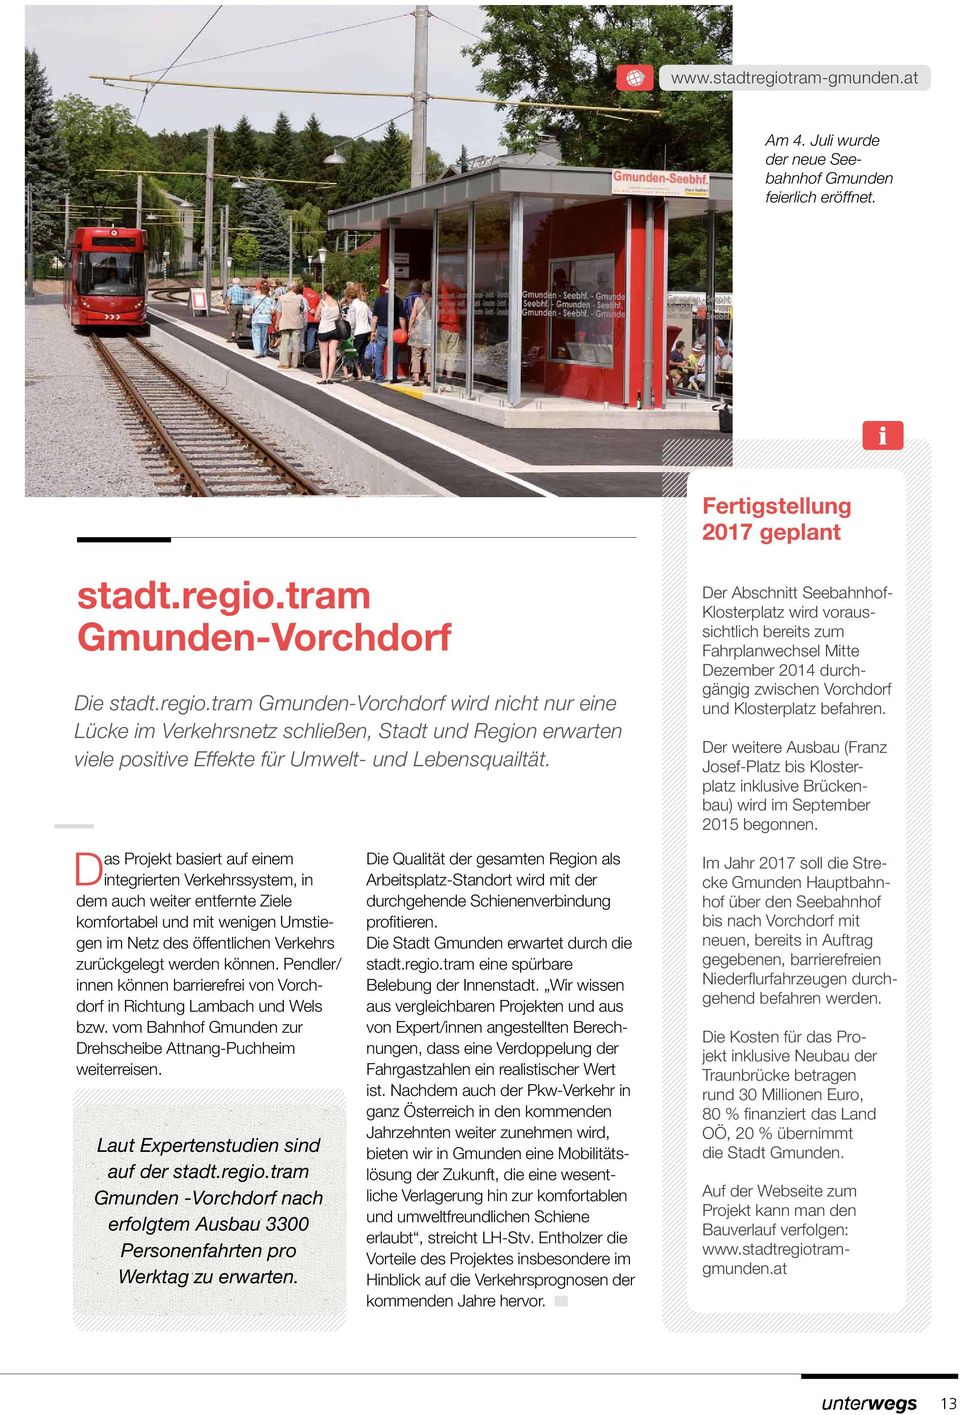 Pendler/ innen können barrierefrei von Vorchdorf in Richtung Lambach und Wels bzw. vom Bahnhof Gmunden zur Drehscheibe Attnang-Puchheim weiterreisen. Laut Expertenstudien sind auf der stadt.regio.